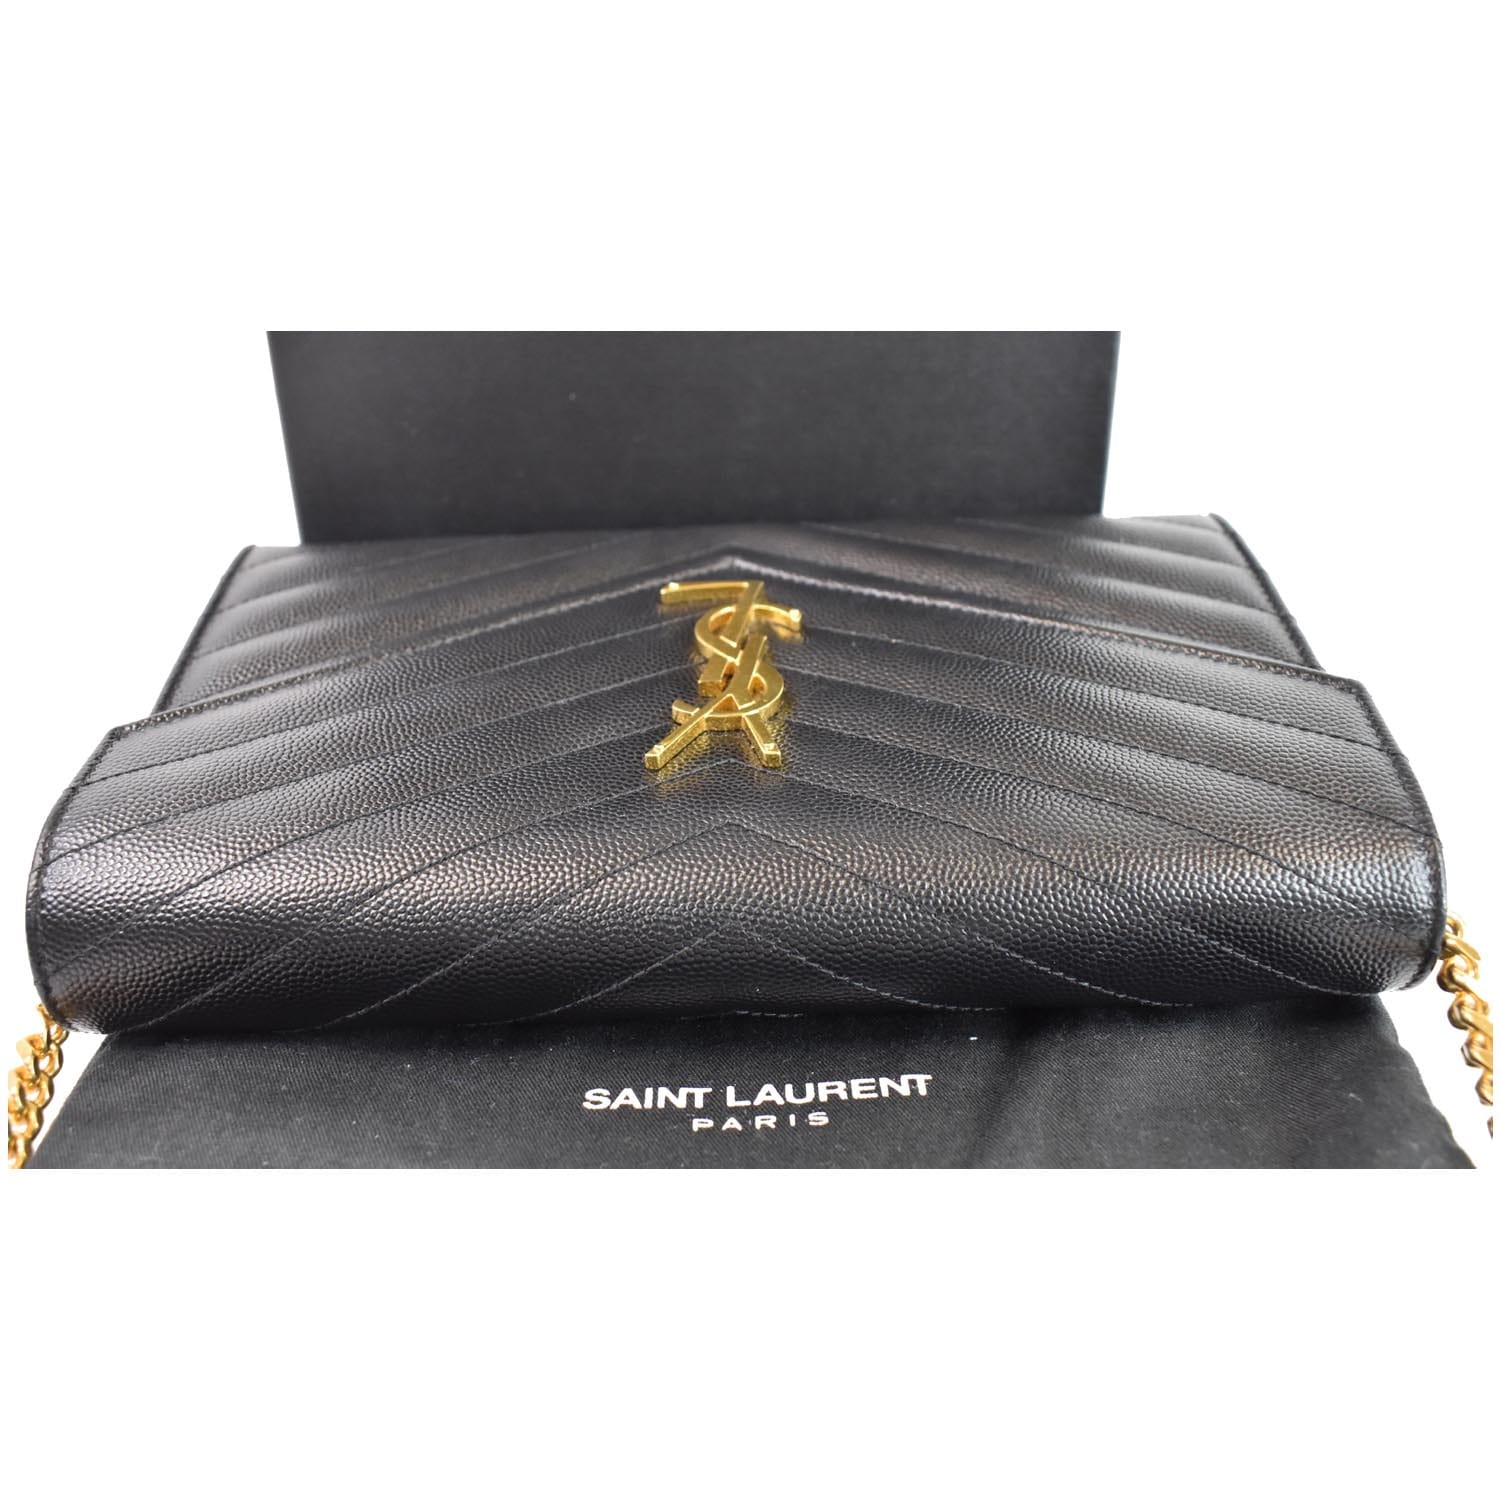 Yves Saint Laurent Grain de Poudre Matelasse Chevron Monogram Flap Wallet  in Bubblegum - The Palm Beach Trunk Designer Resale and Luxury Consignment